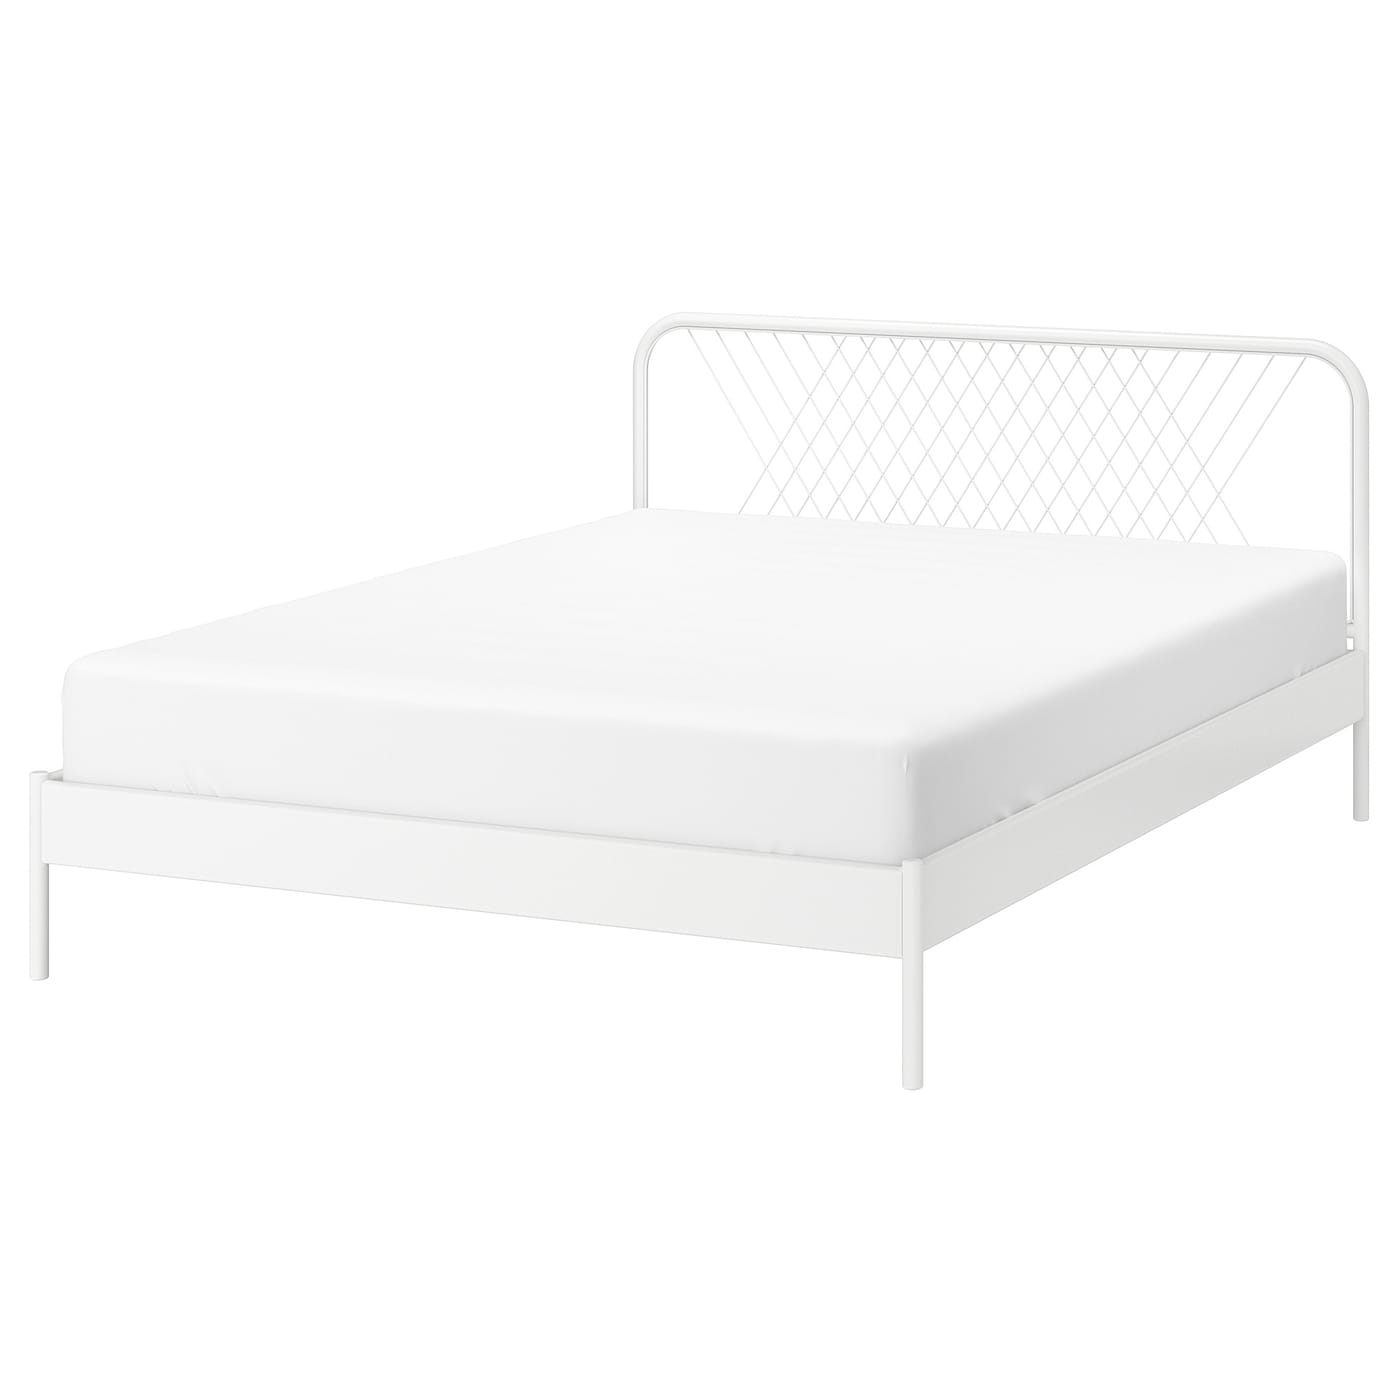 Каркас кровати - IKEA NESTTUN, 200х160 см, белый, НЕСТТУН ИКЕА